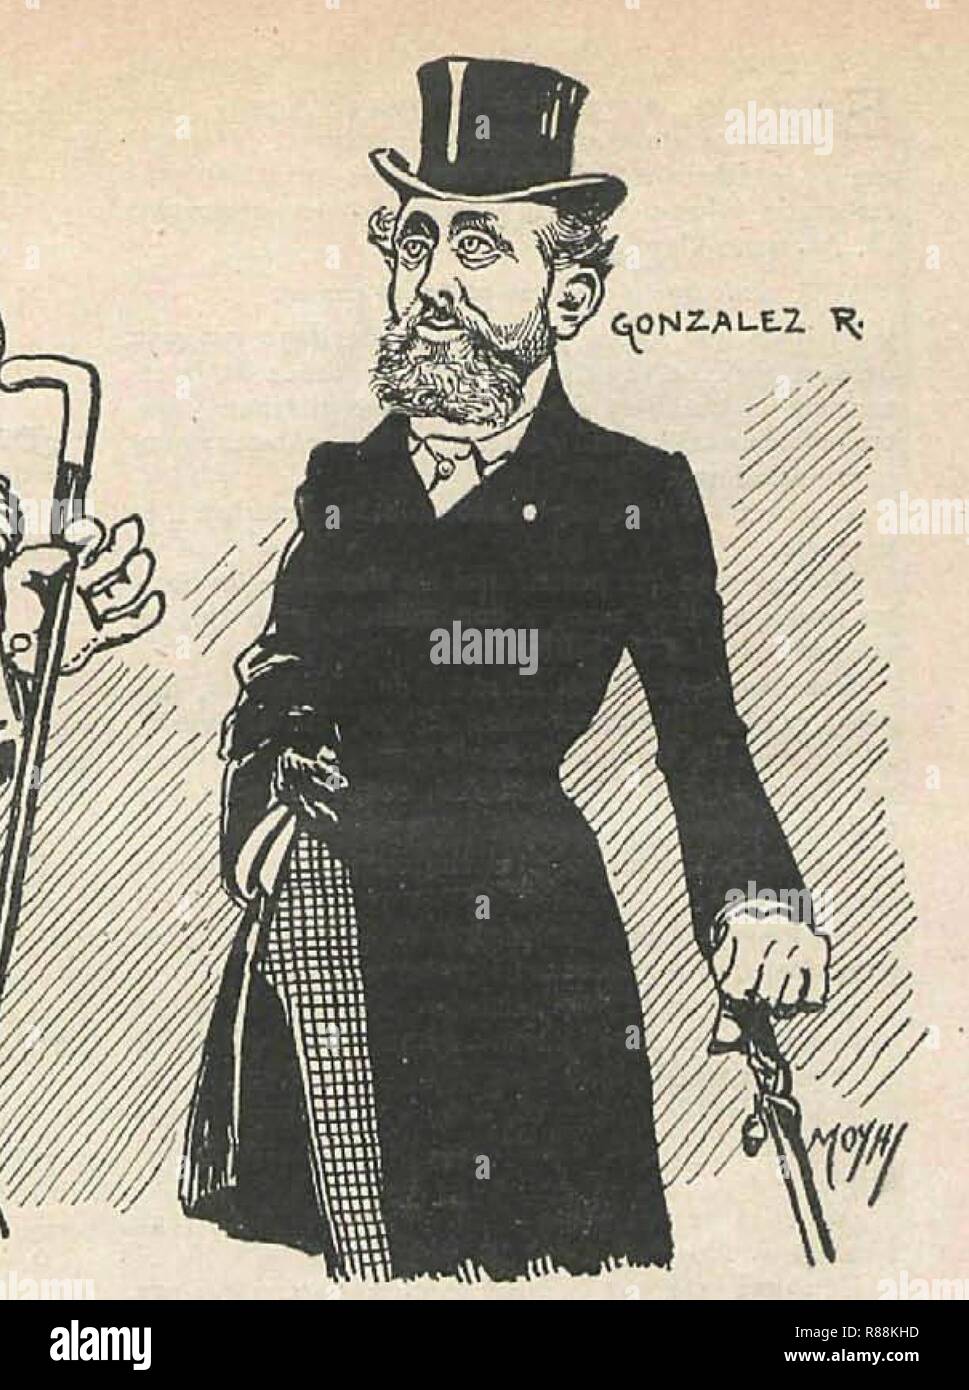 Carlos González Rothwos, Después del atentado, de Moya, Gedeón, 25-11-1904 (cropped). Stock Photo